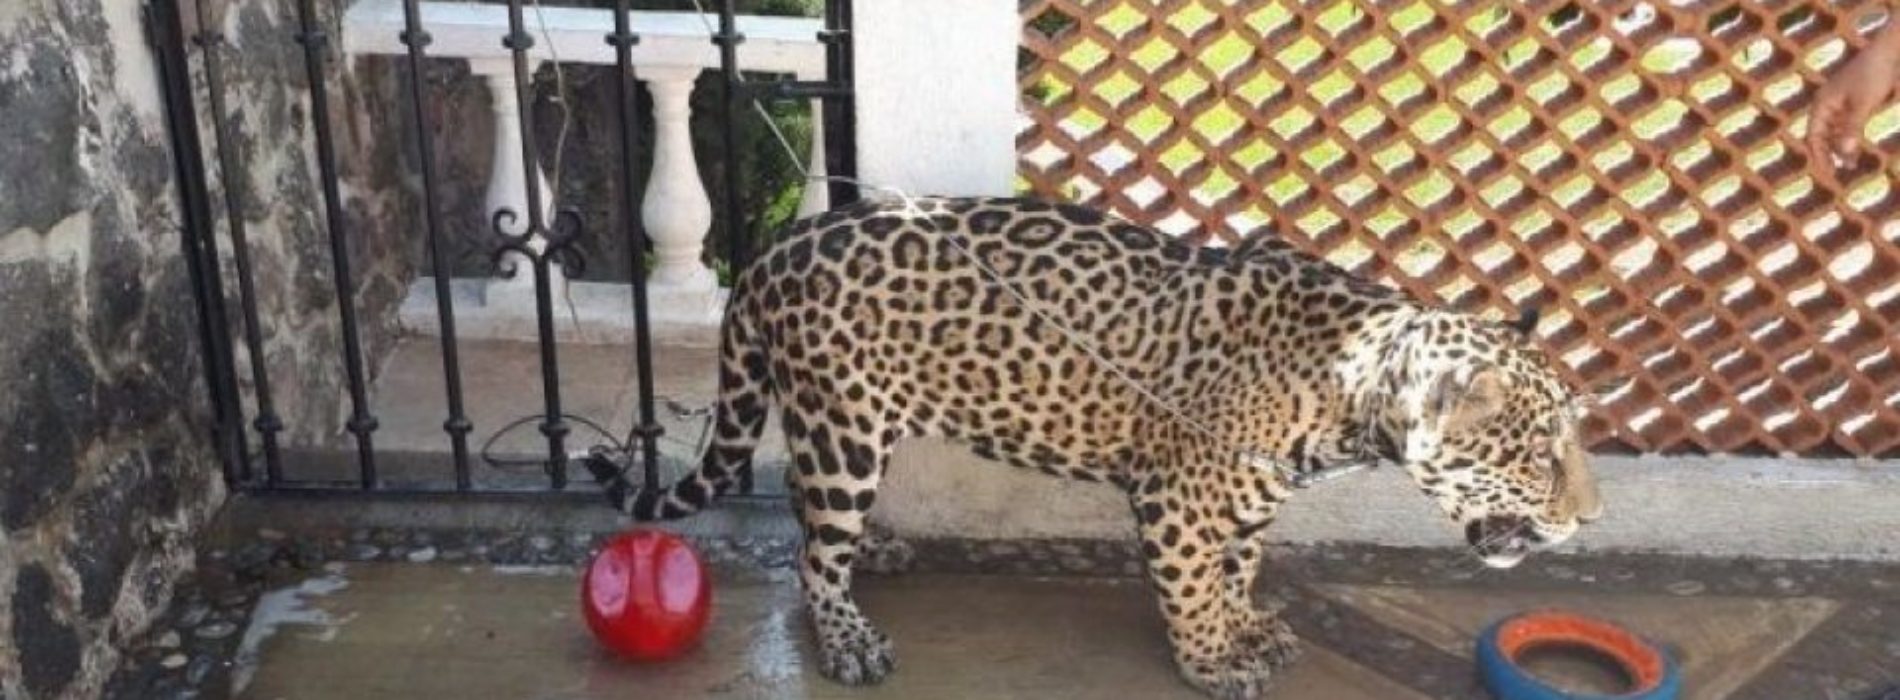 Aseguran jaguar en Cuernavaca; vivía en patio de una casa
sin garras y sin colmillos